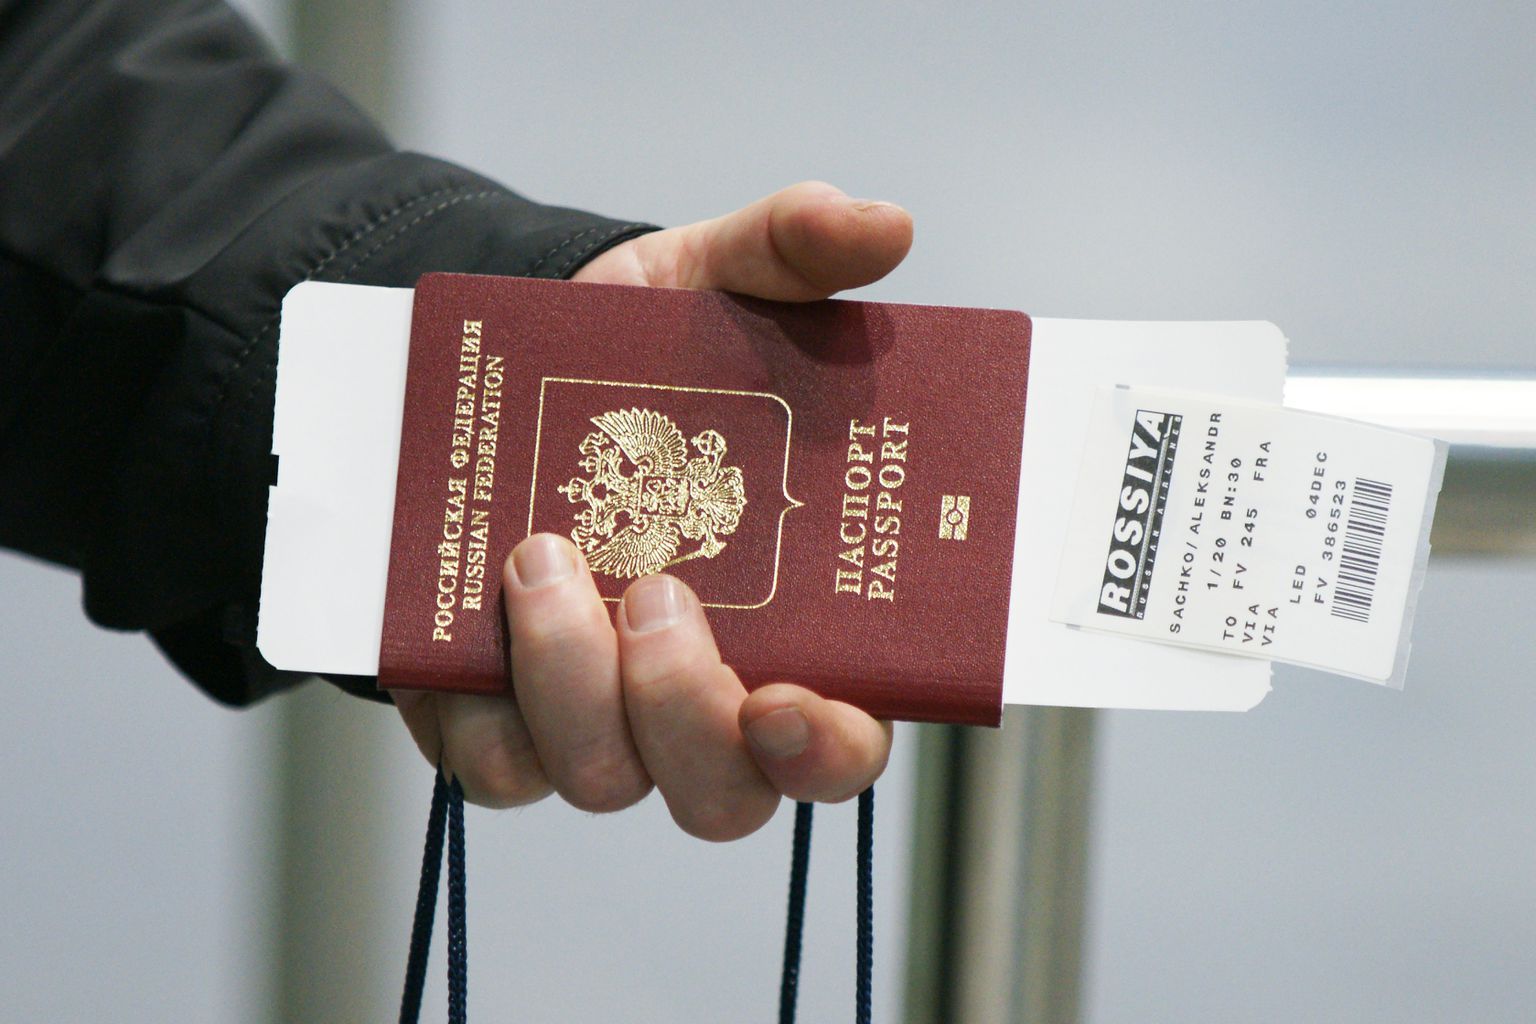 Российский паспорт. Иллюстративное фото